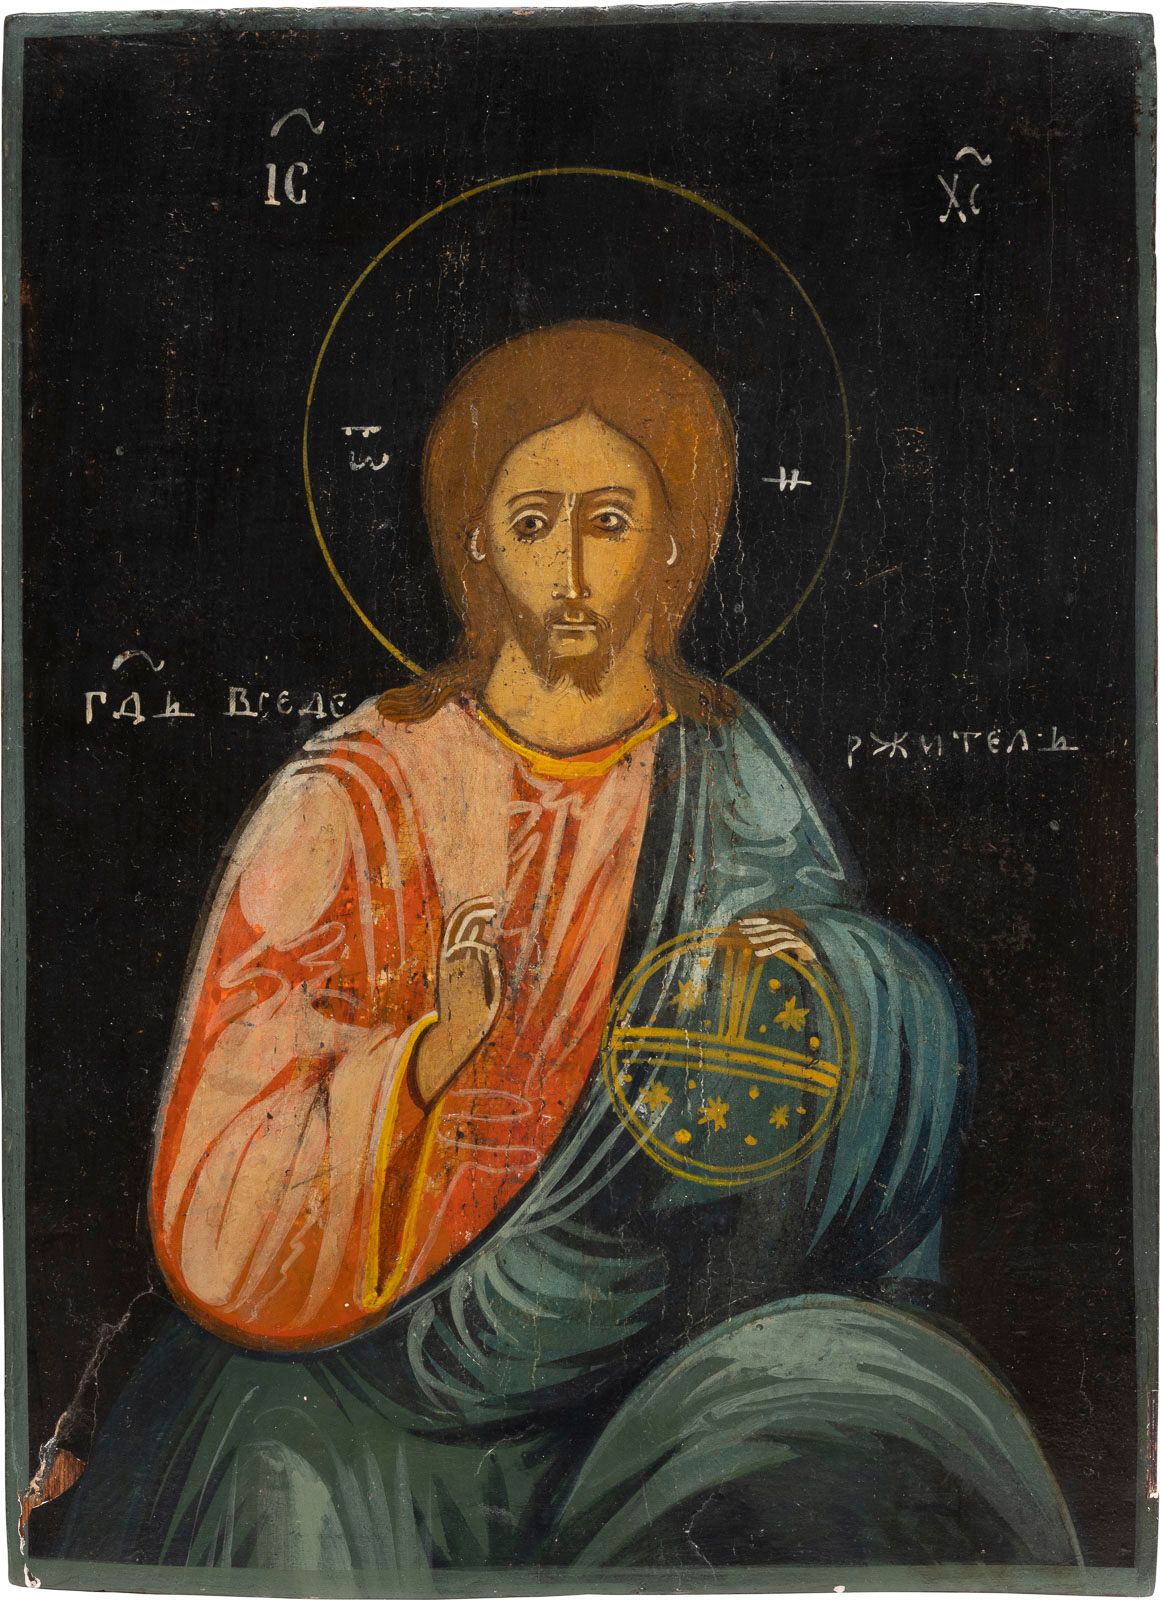 AN ICON SHOWING CHRIST THE SAVIOUR 显示救世主的圣像 俄罗斯，19世纪 木板上的淡彩画。稍加修复。29.8 x 22厘米。

&hellip;